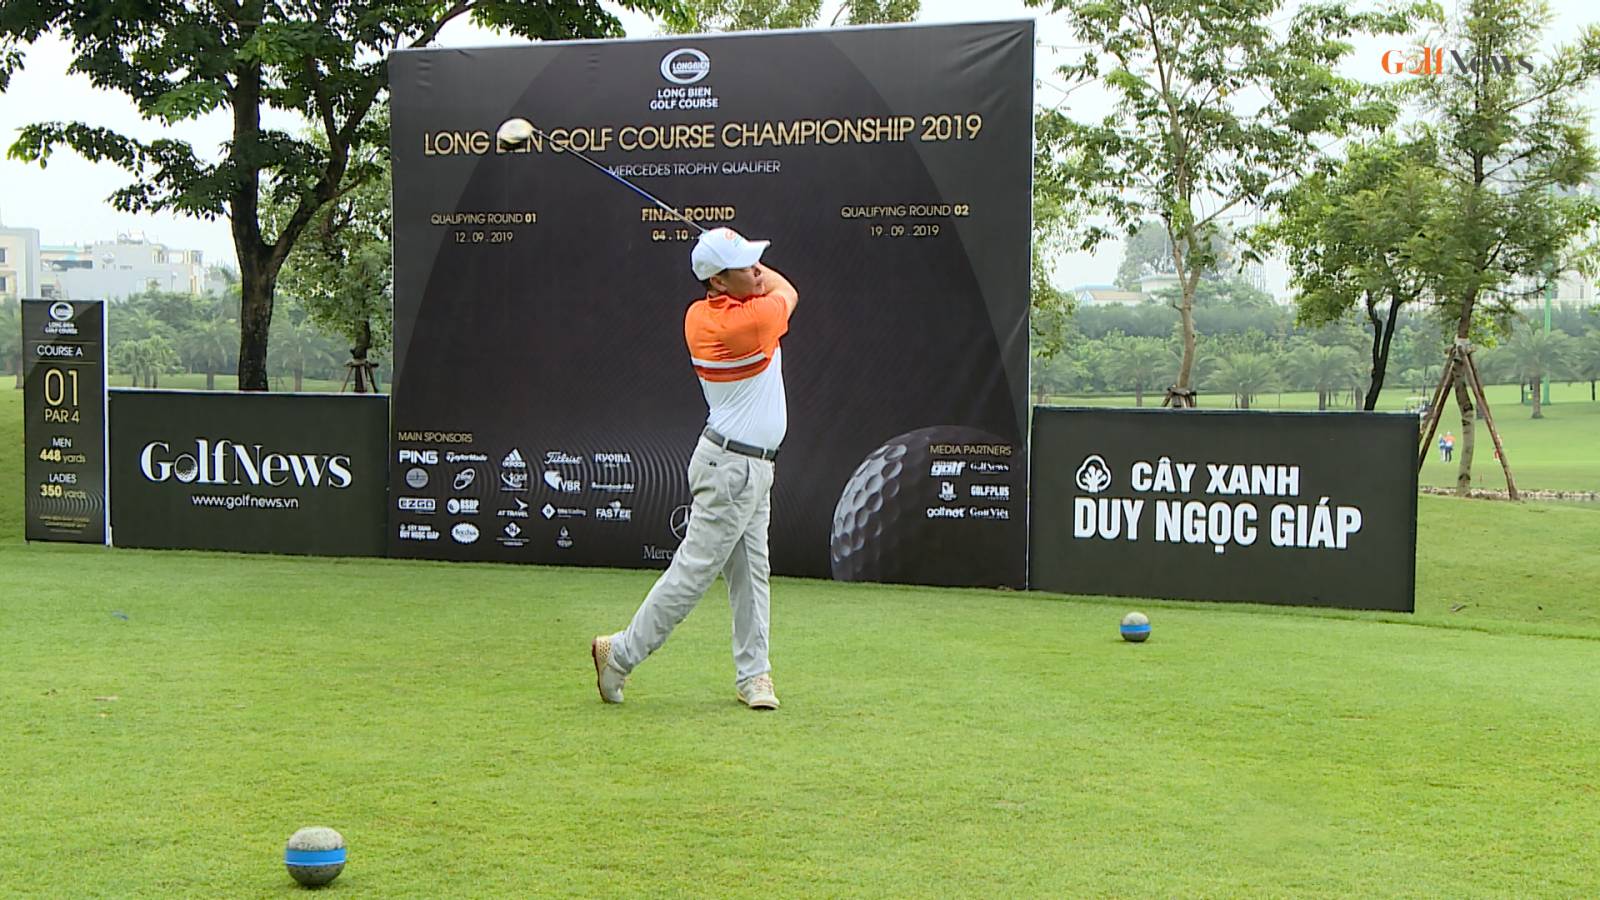 Hơn 200 golfer tham dự vòng loại 2 giải Long Biên Golf Course Championship 2019